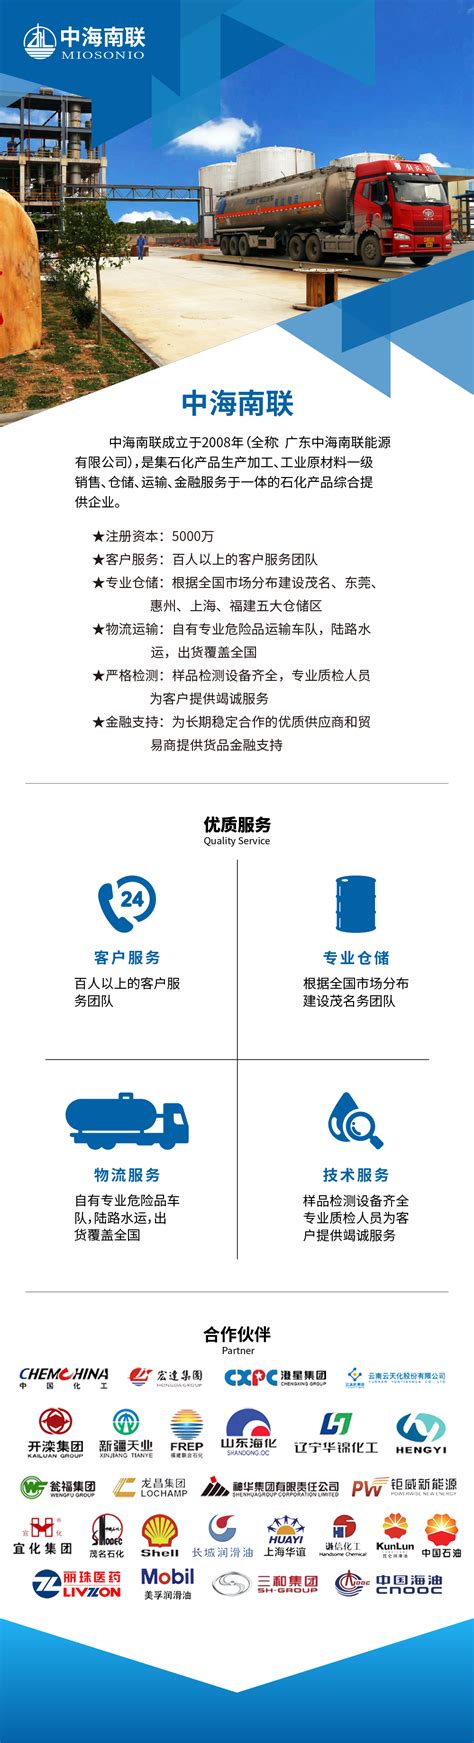 企业介绍 - 关于我们 - 中海南联_优秀的工业原材料提供专家